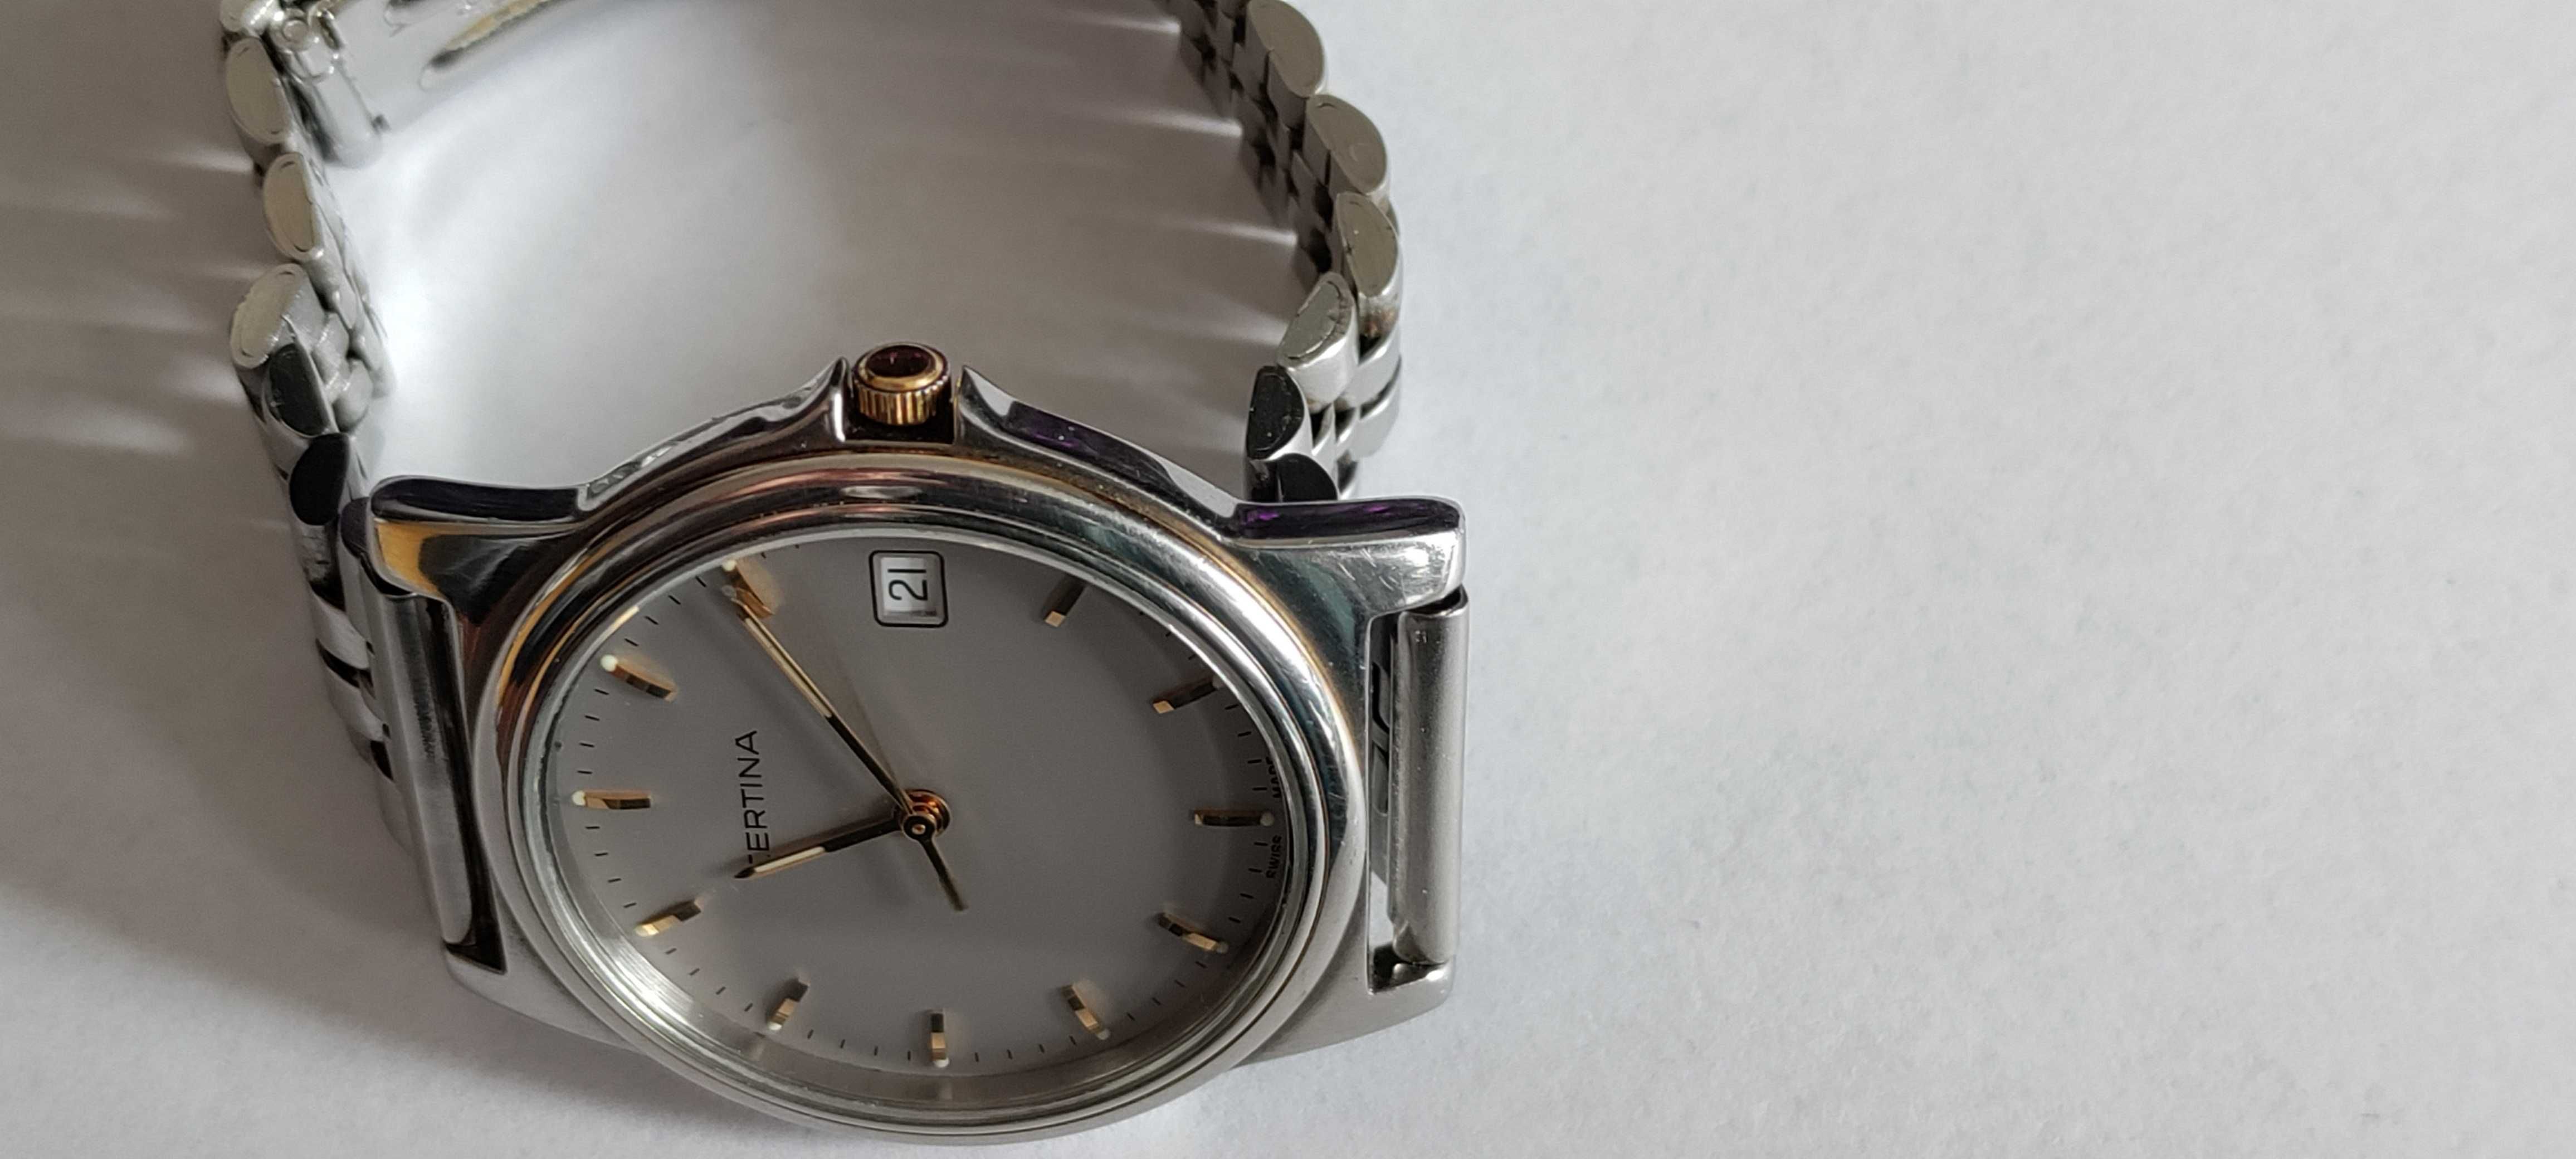 Zegarek męski Certina  Vintage Złote indeksy